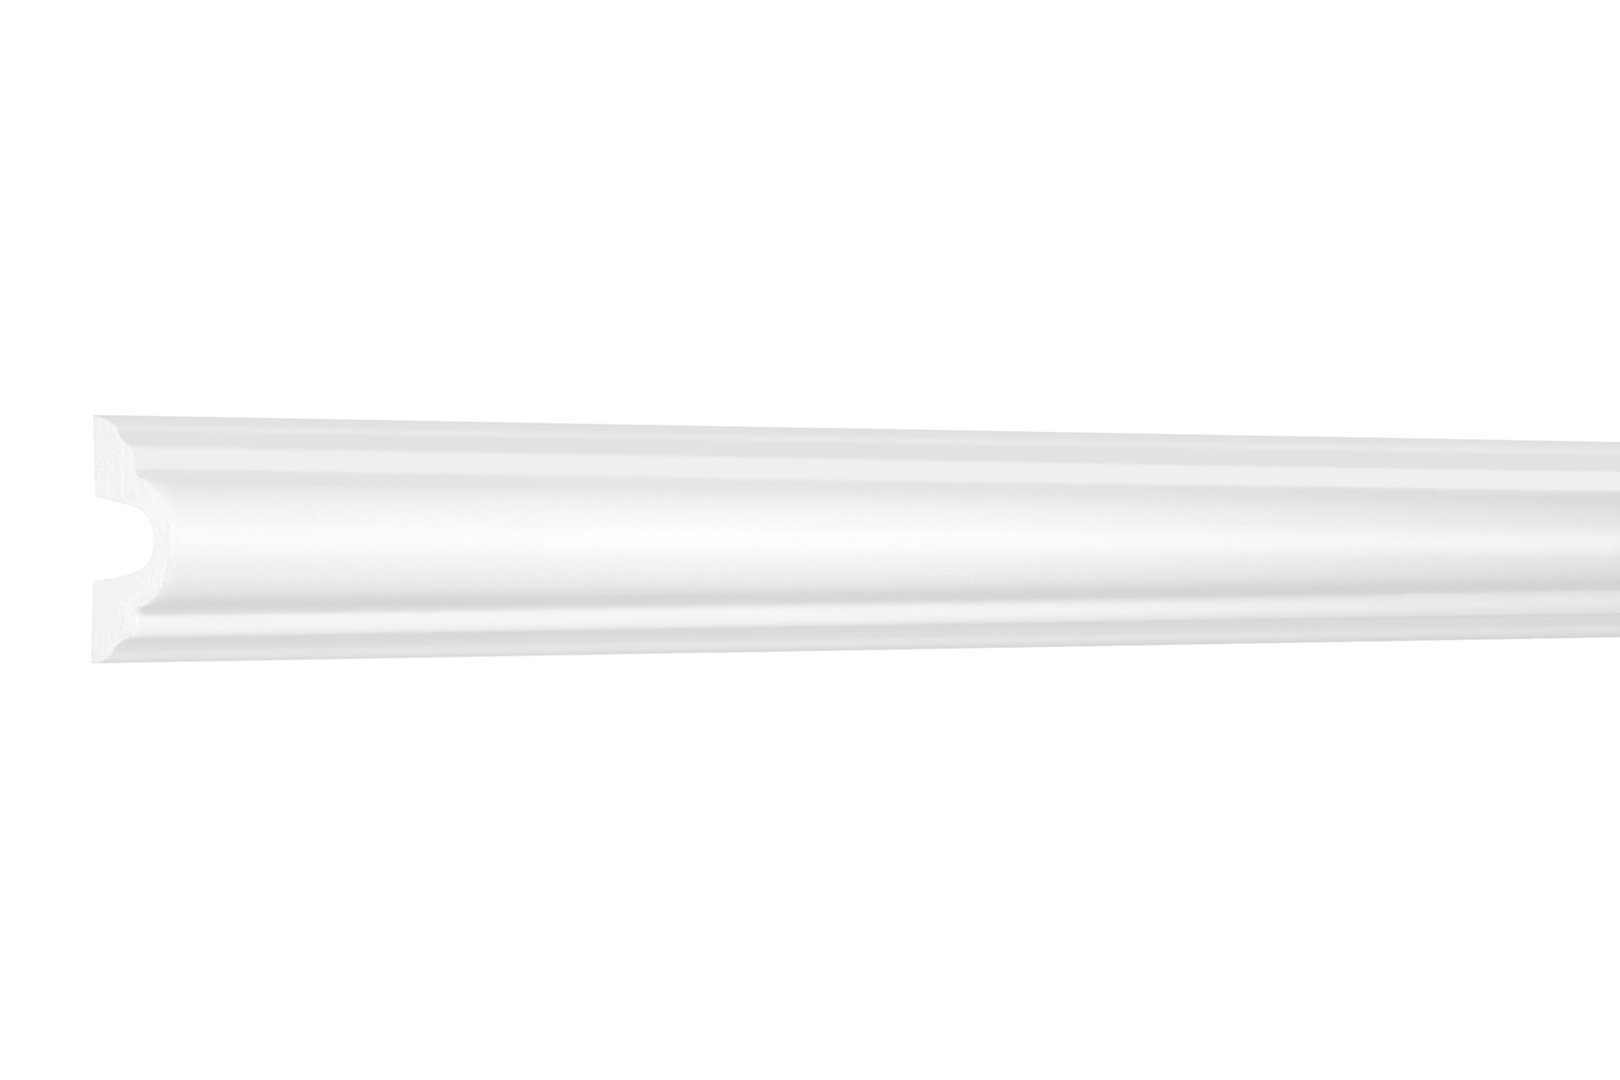 Hexim Stuckleiste HCR501, 20 Meter / 10 Leisten, Stuckleisten aus HDPS Styropor - extrem widerstandsfähig, schneeweiß & modern (20 Meter / 10 Leisten) Wandabschlussleiste Dekorleiste HDPS Zierleiste HCR501 - 29 x 16 mm